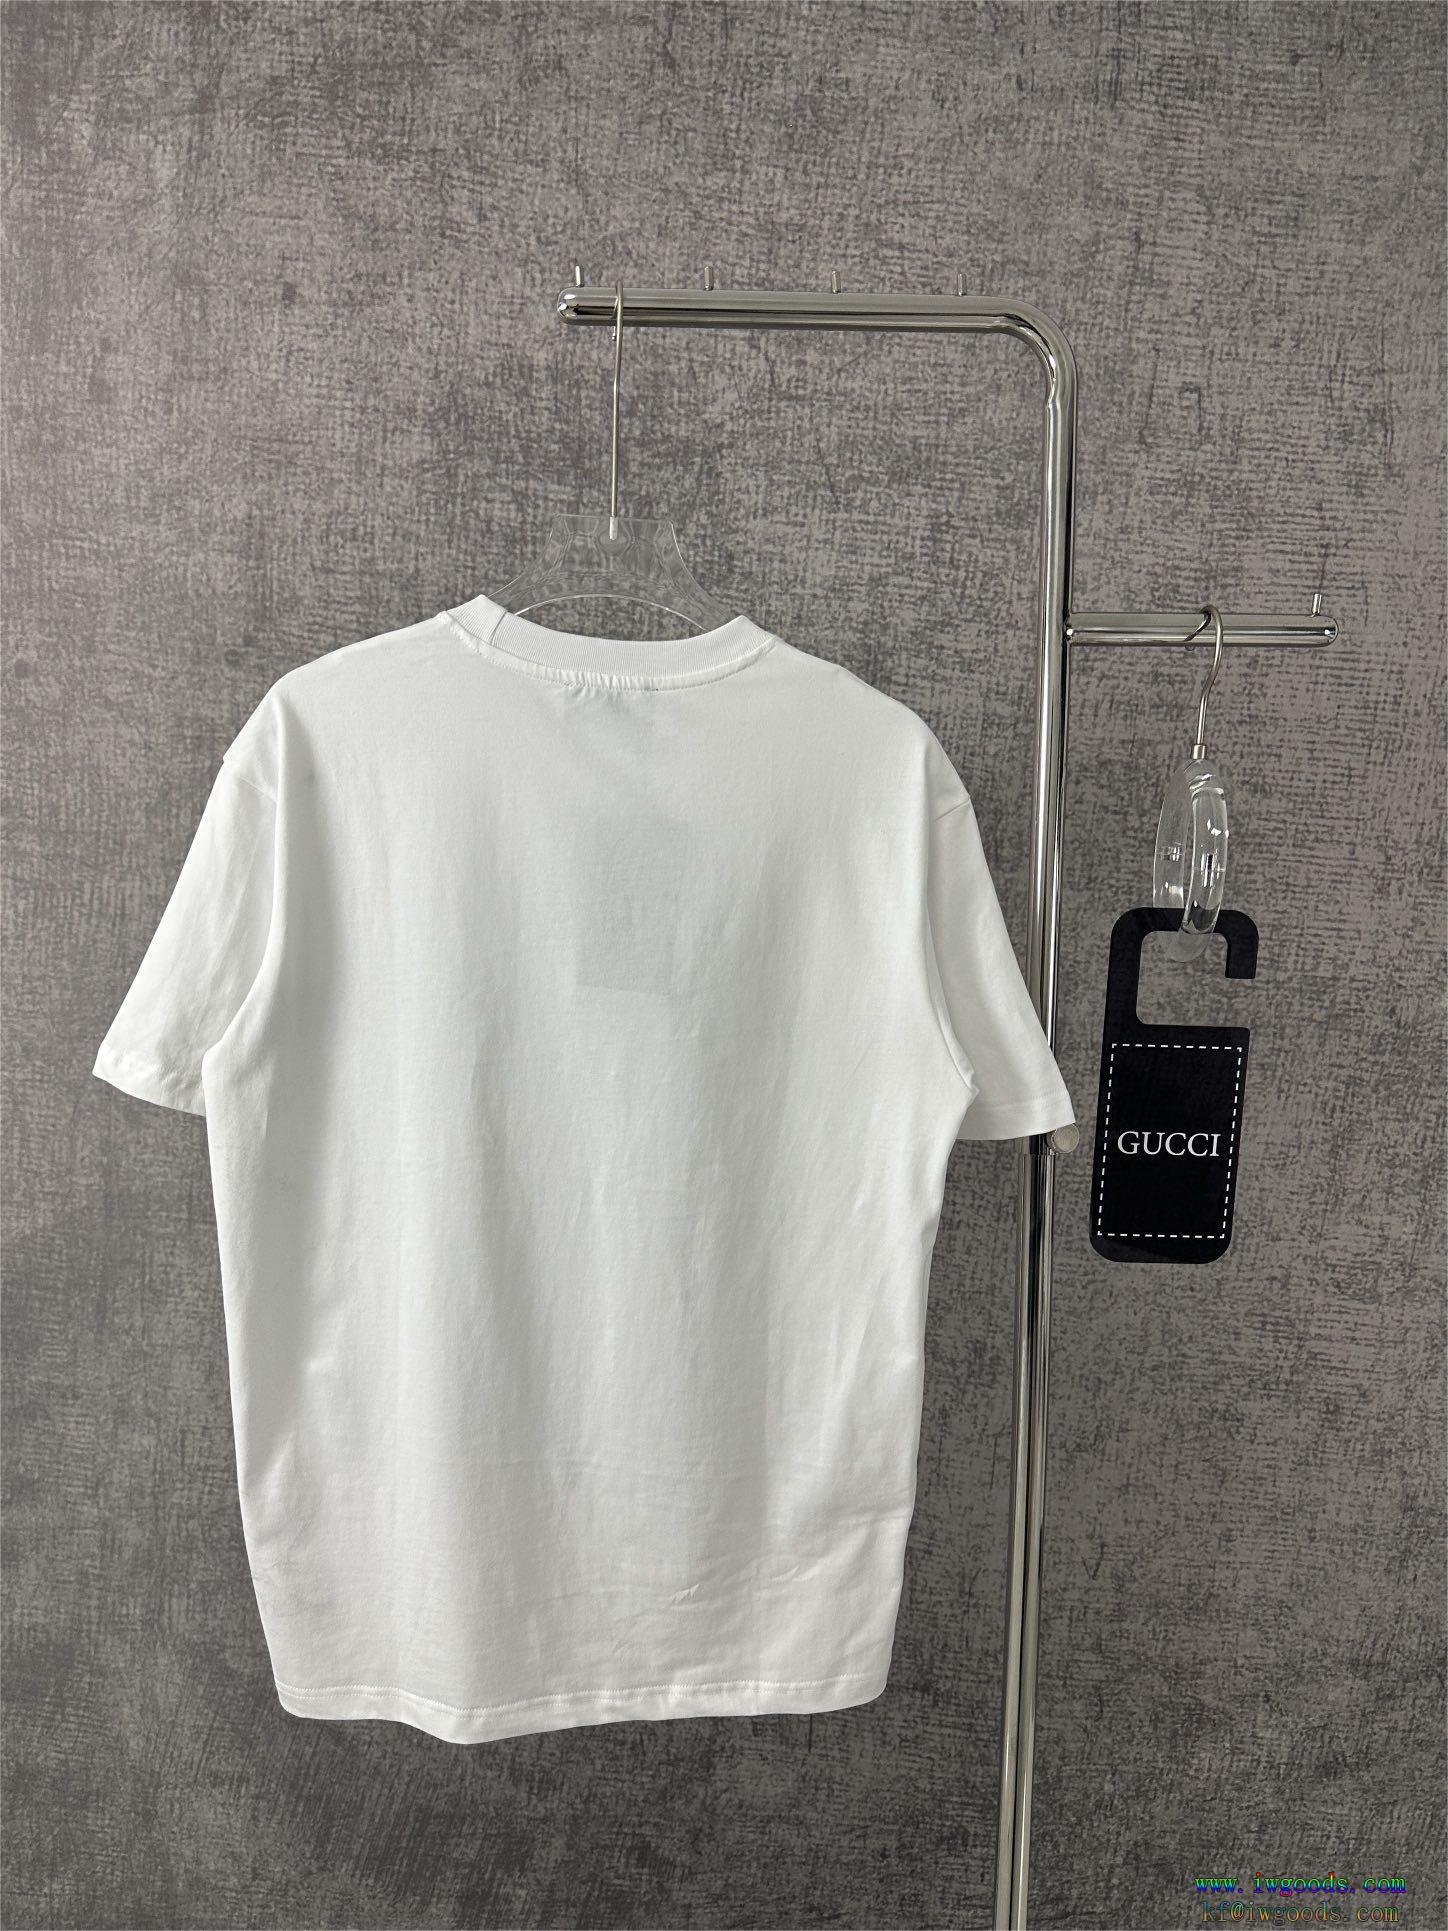 GUCC1半袖Tシャツ【ユニセックス】ブランド コピー,GUCC1スーパー コピー ブランド 通販